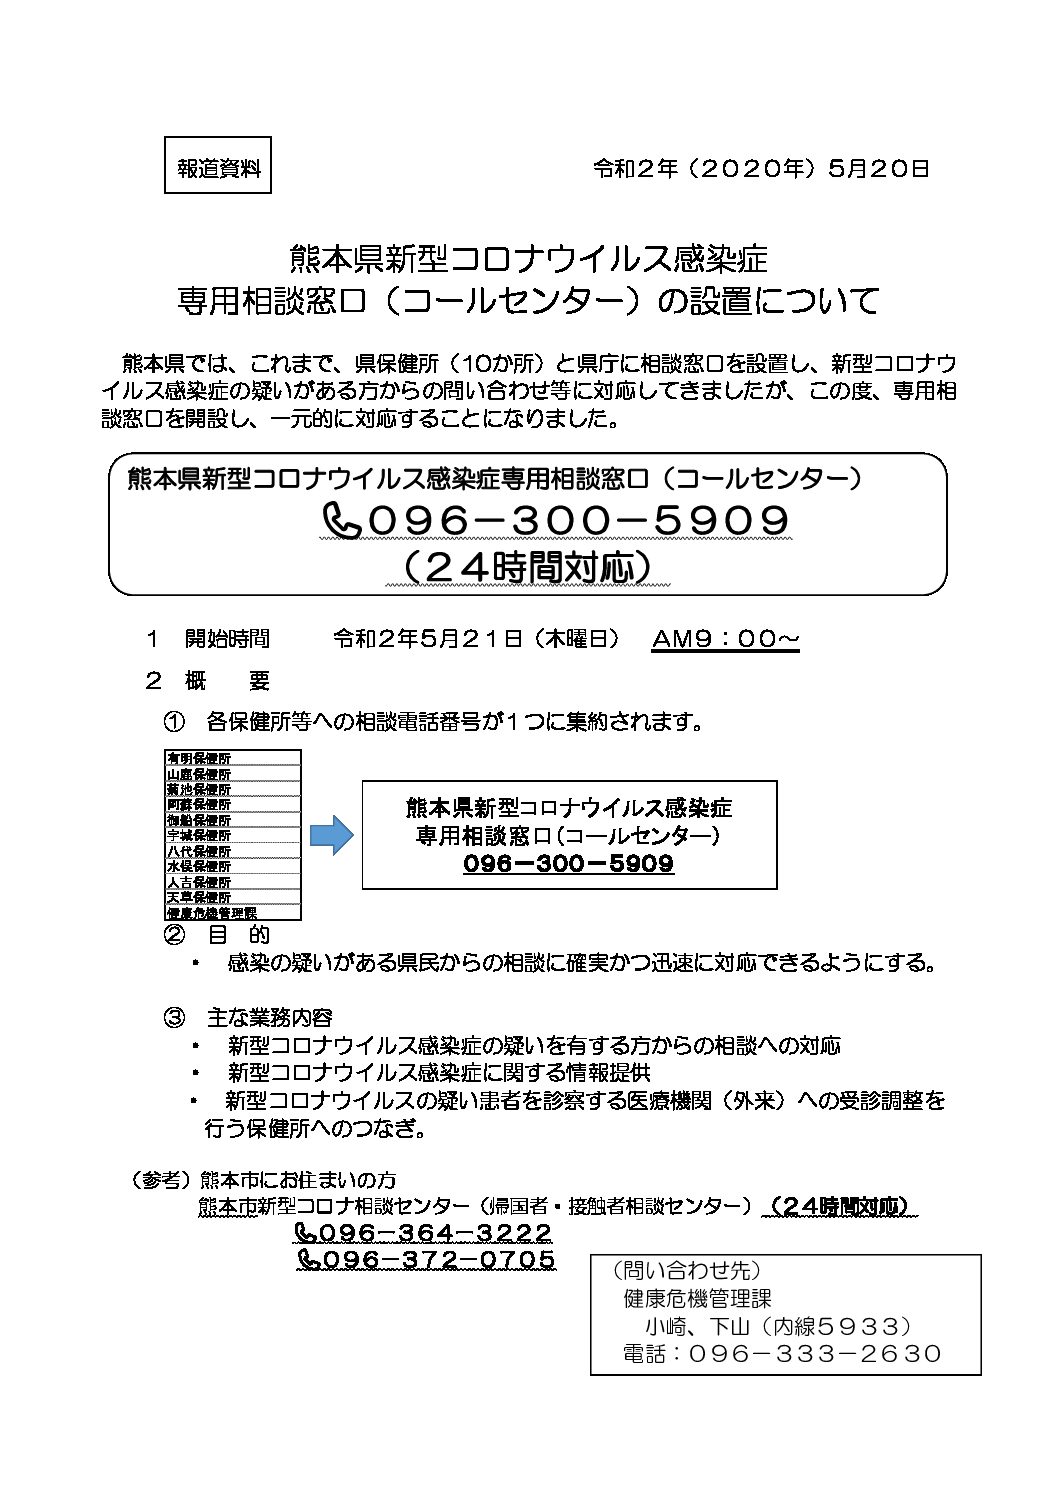 一般社団法人熊本県私立幼稚園連合会 熊本県新型コロナウイルス感染症専用相談窓口の設置について